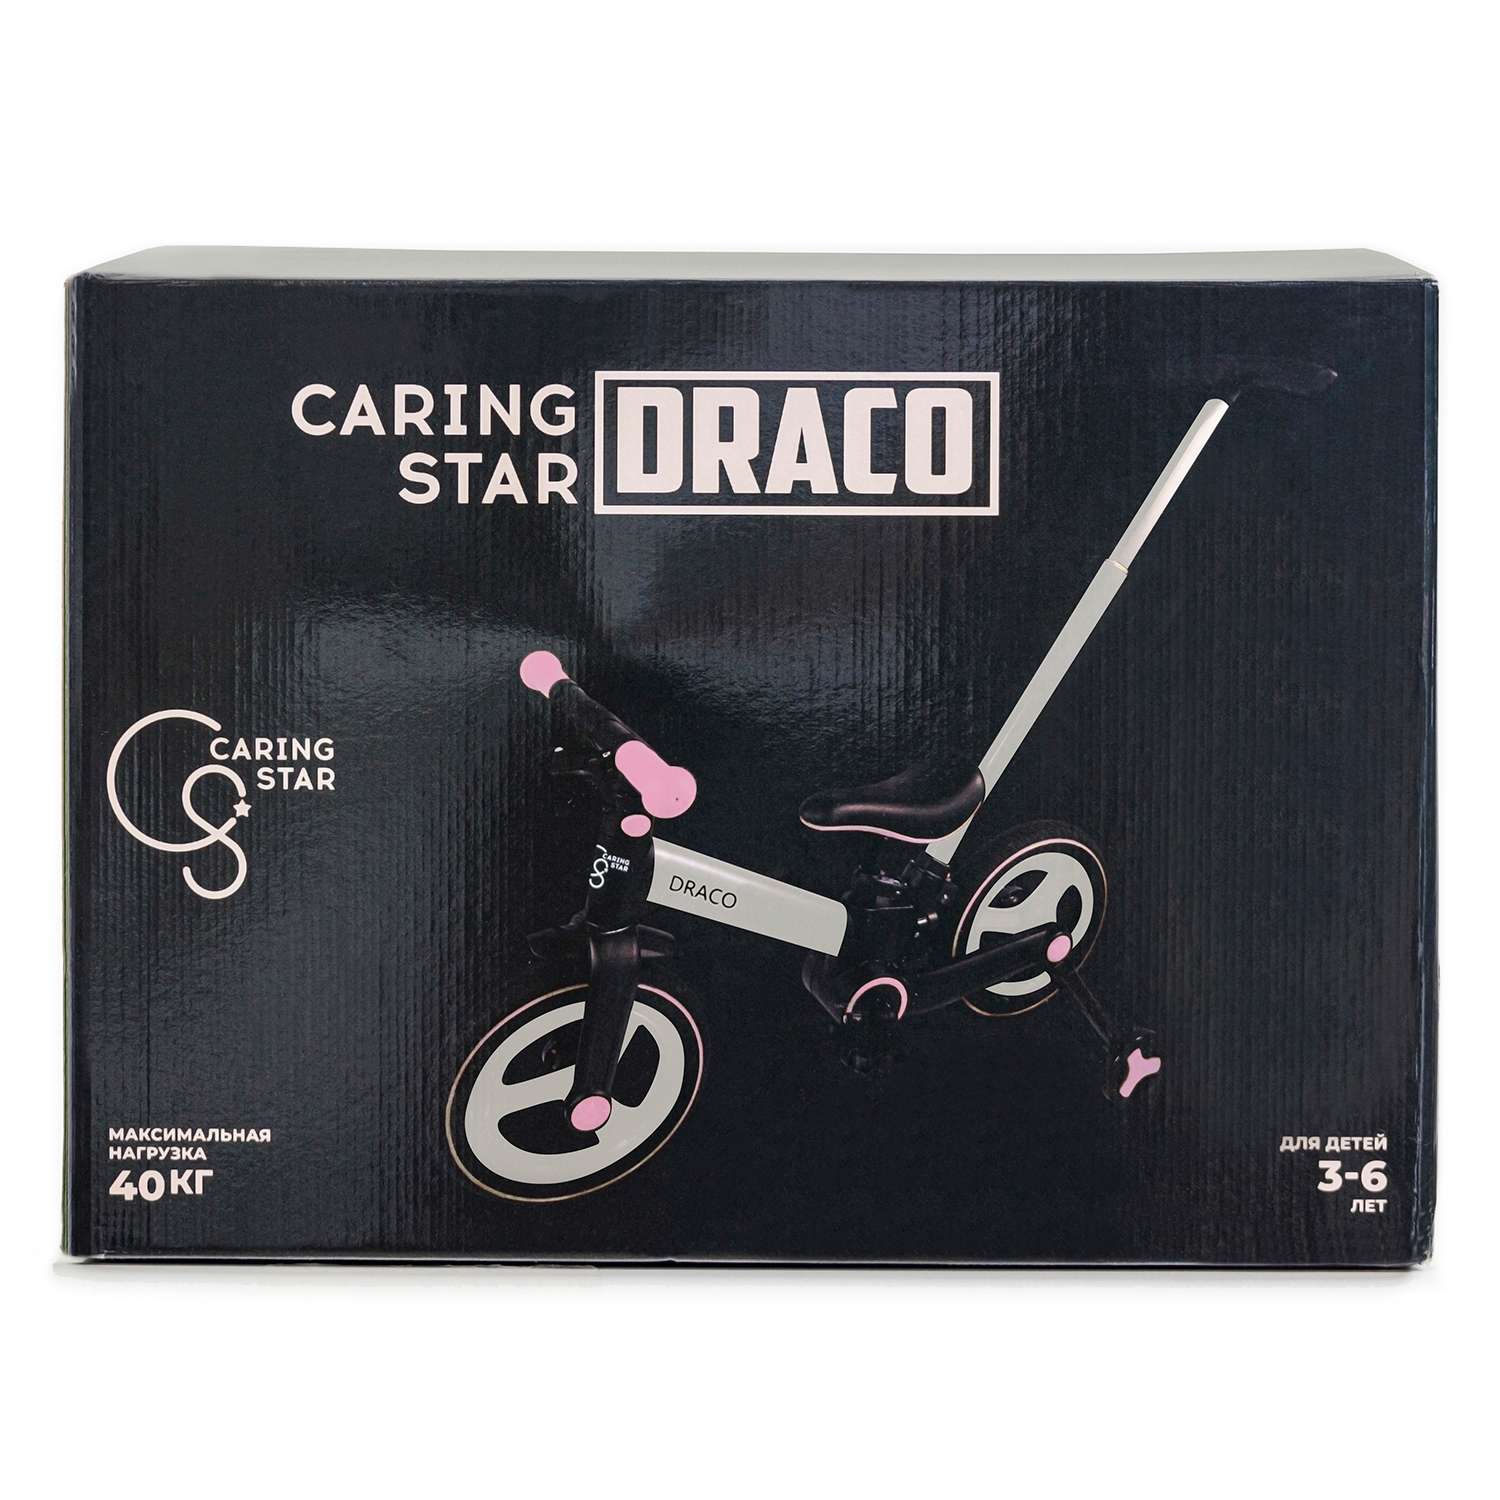 Велосипед двухколесный CARING STAR DRACO - фото 33